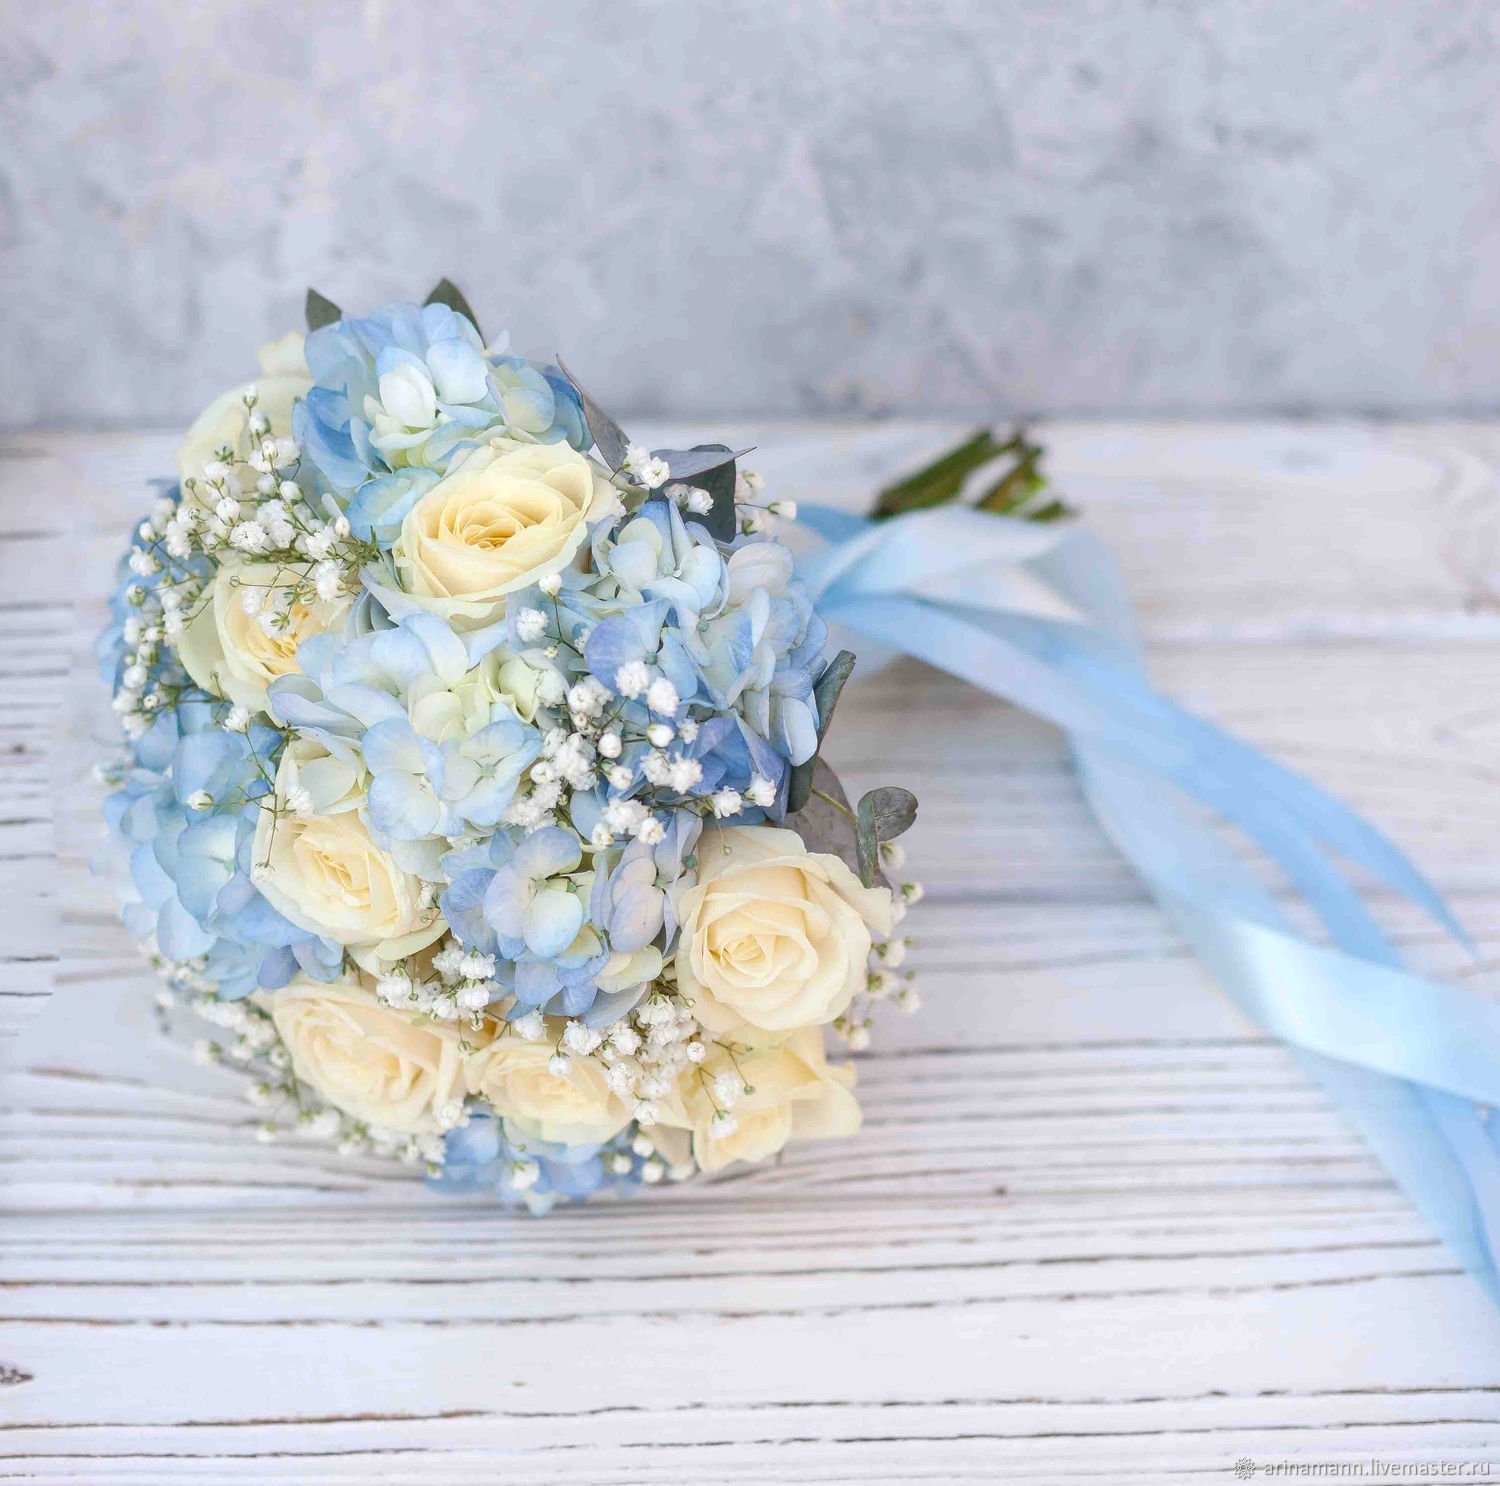 Купить голубой букет невесты в СПб